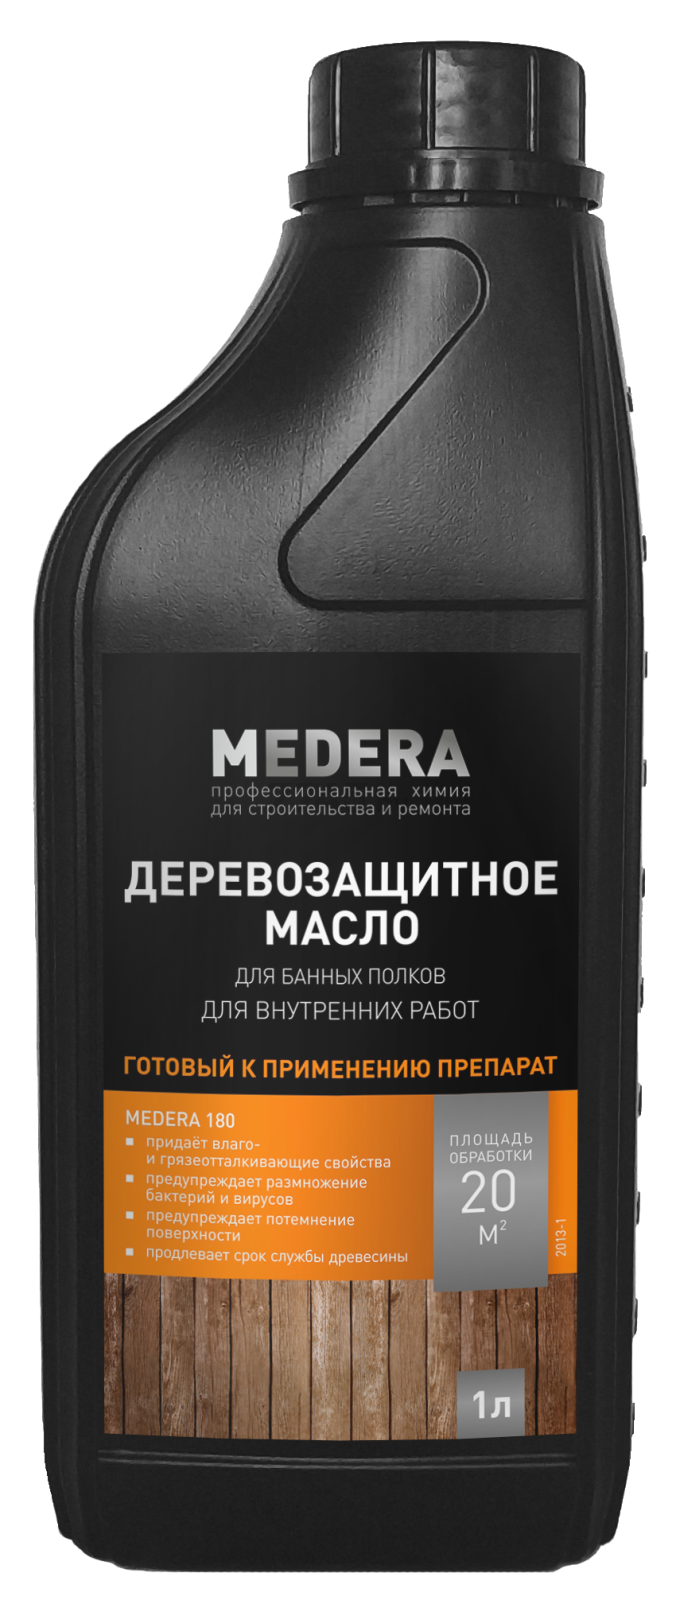 Масло деревозащитное для банных полков MEDERA 180 1 л (2013-1)